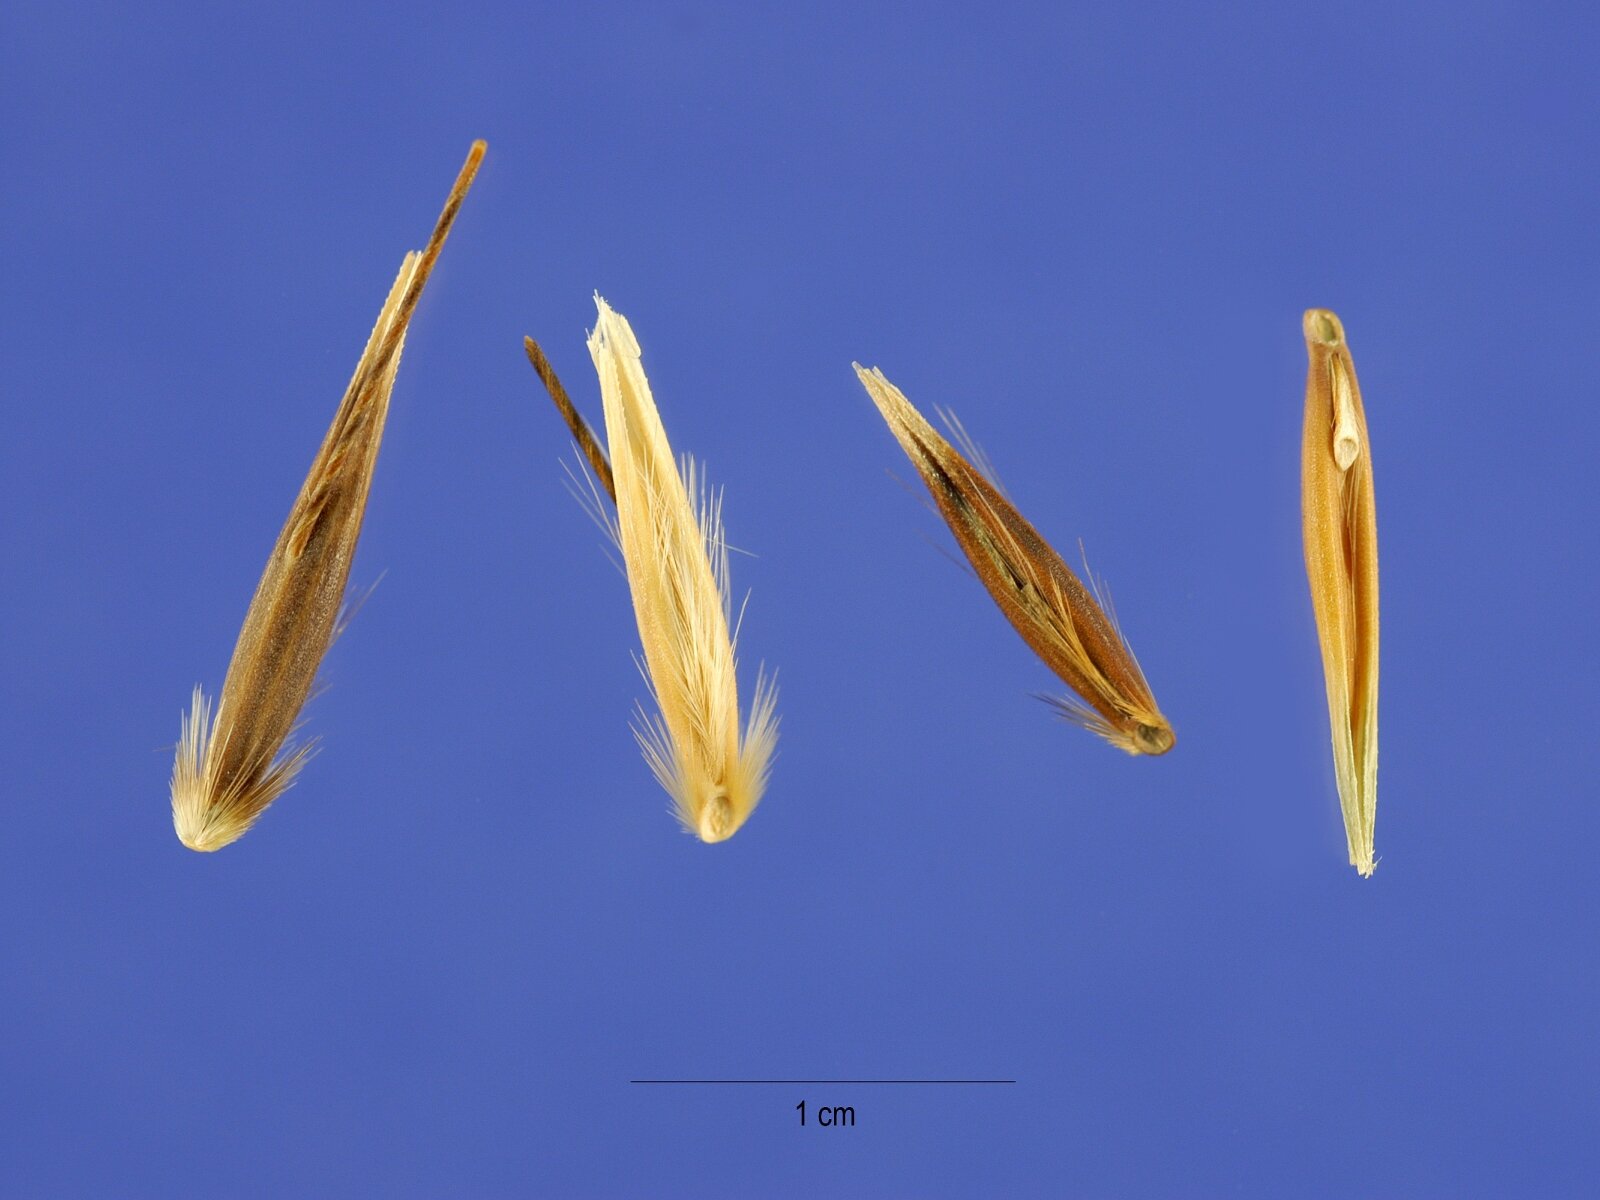 Анализы лаборатории выявили злостный сорняк в семенах пшеницы